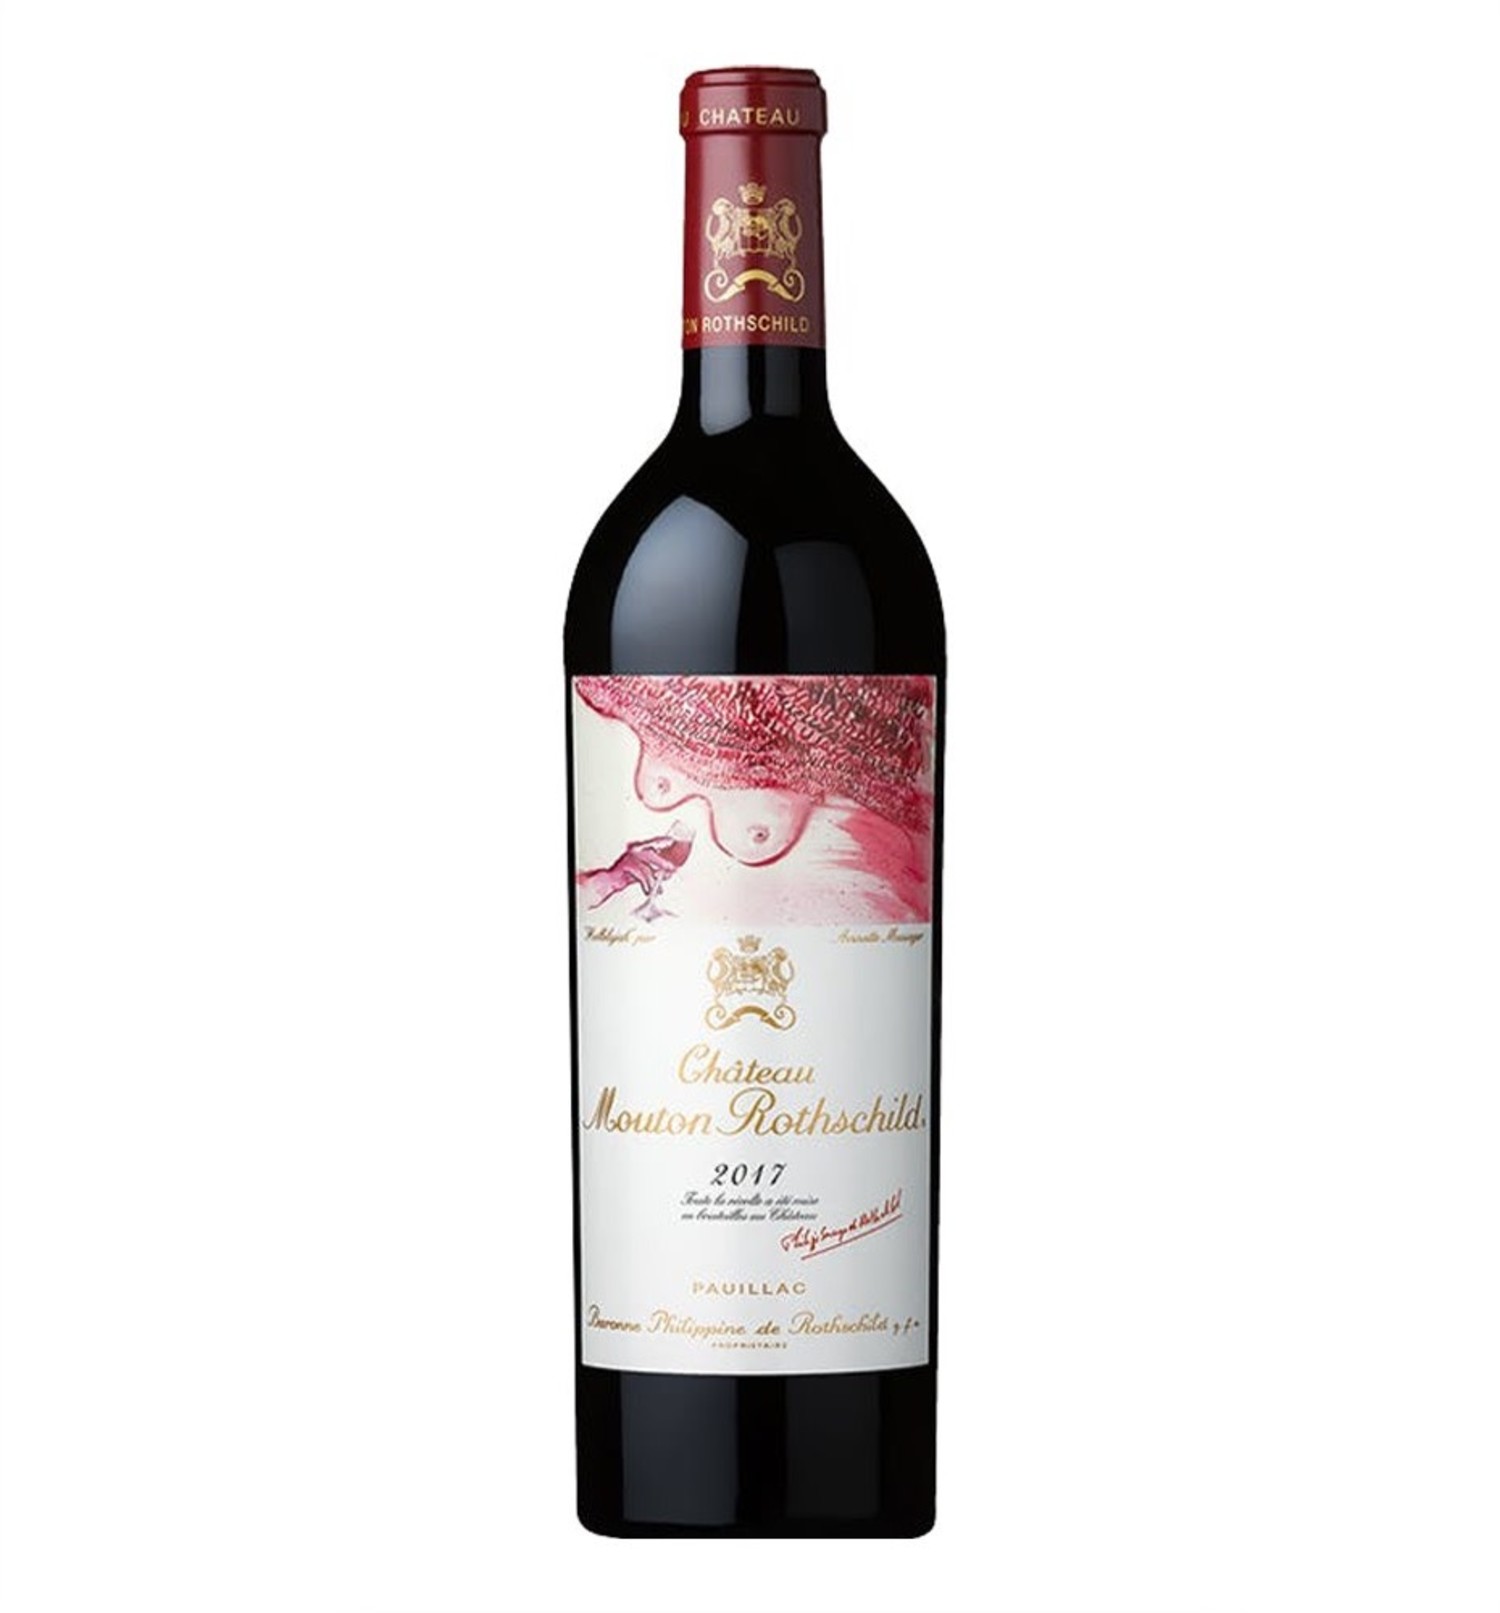 Château Mouton Rothschild Pauillac Bordeaux Red Blend Wine 2017 